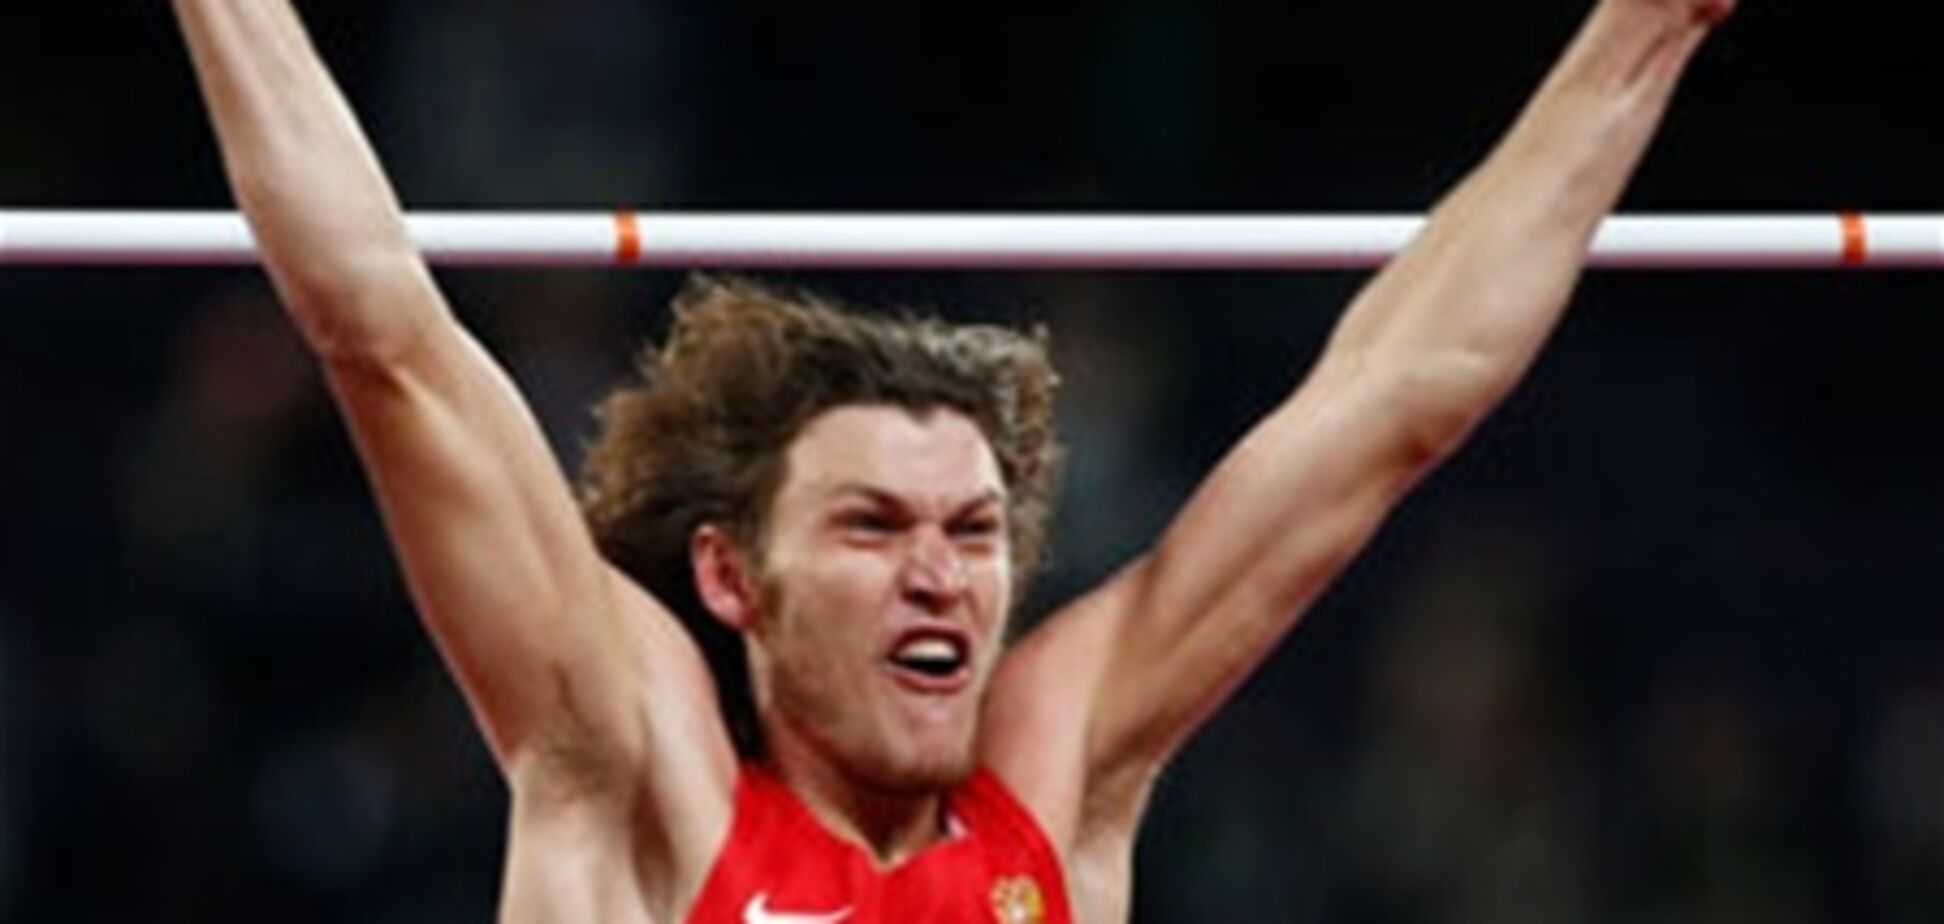 Российский прыгун выиграл золото в чужой майке